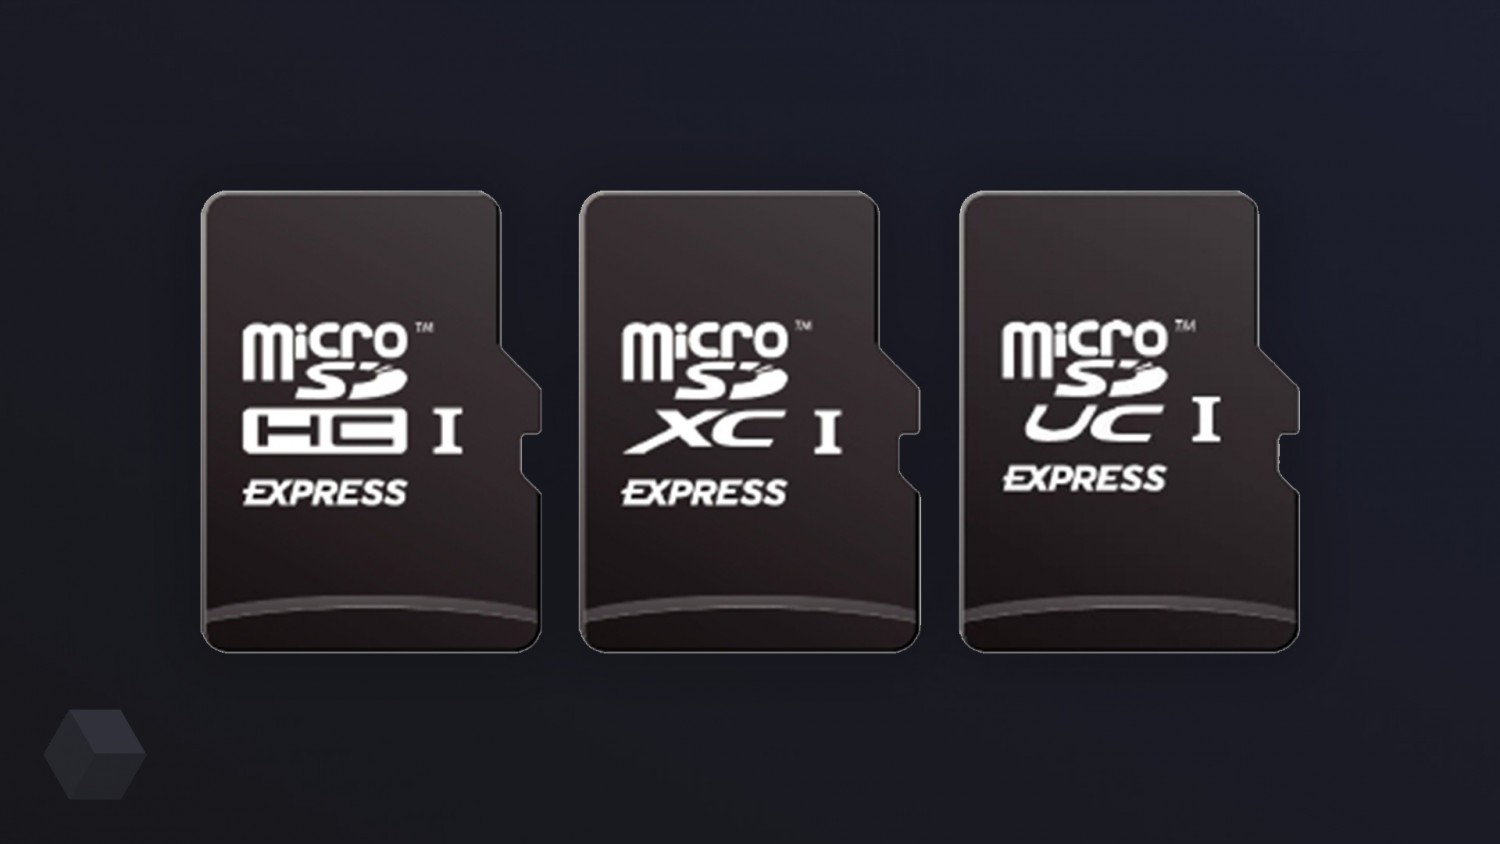 Представлена серия карт памяти microSD Express с повышенной скоростью